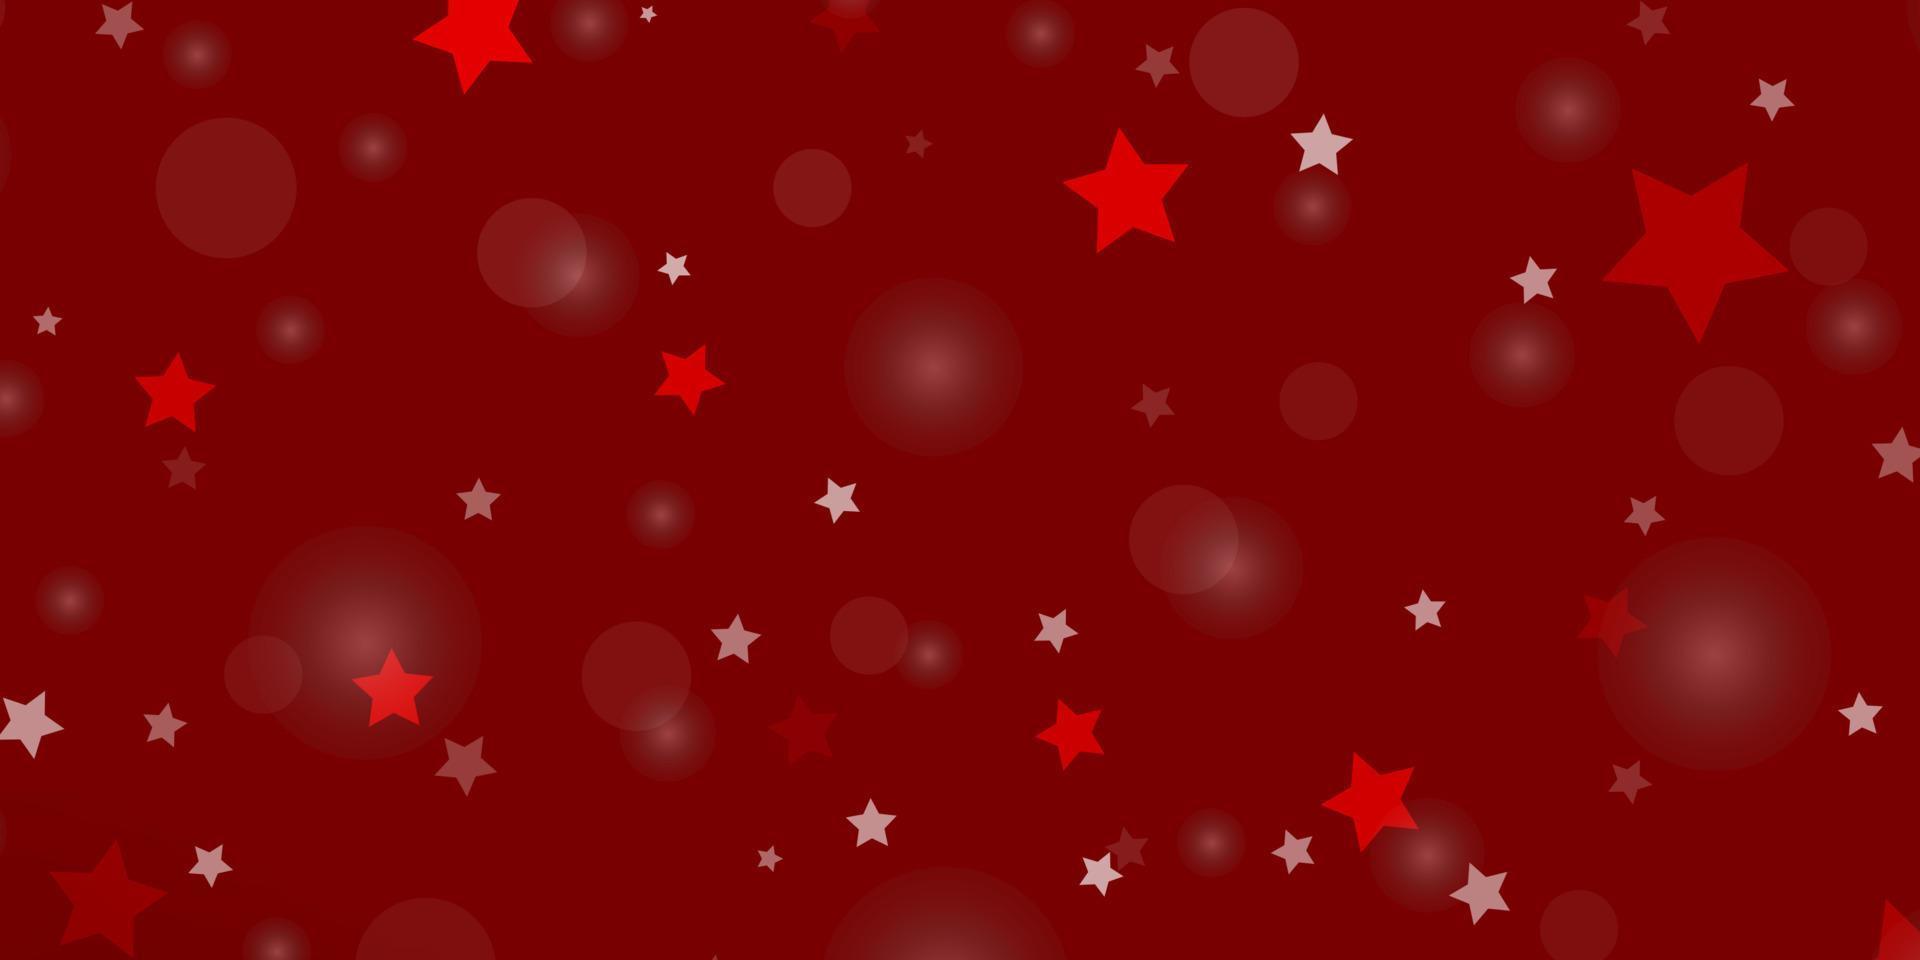 sfondo vettoriale rosso chiaro con cerchi, stelle.